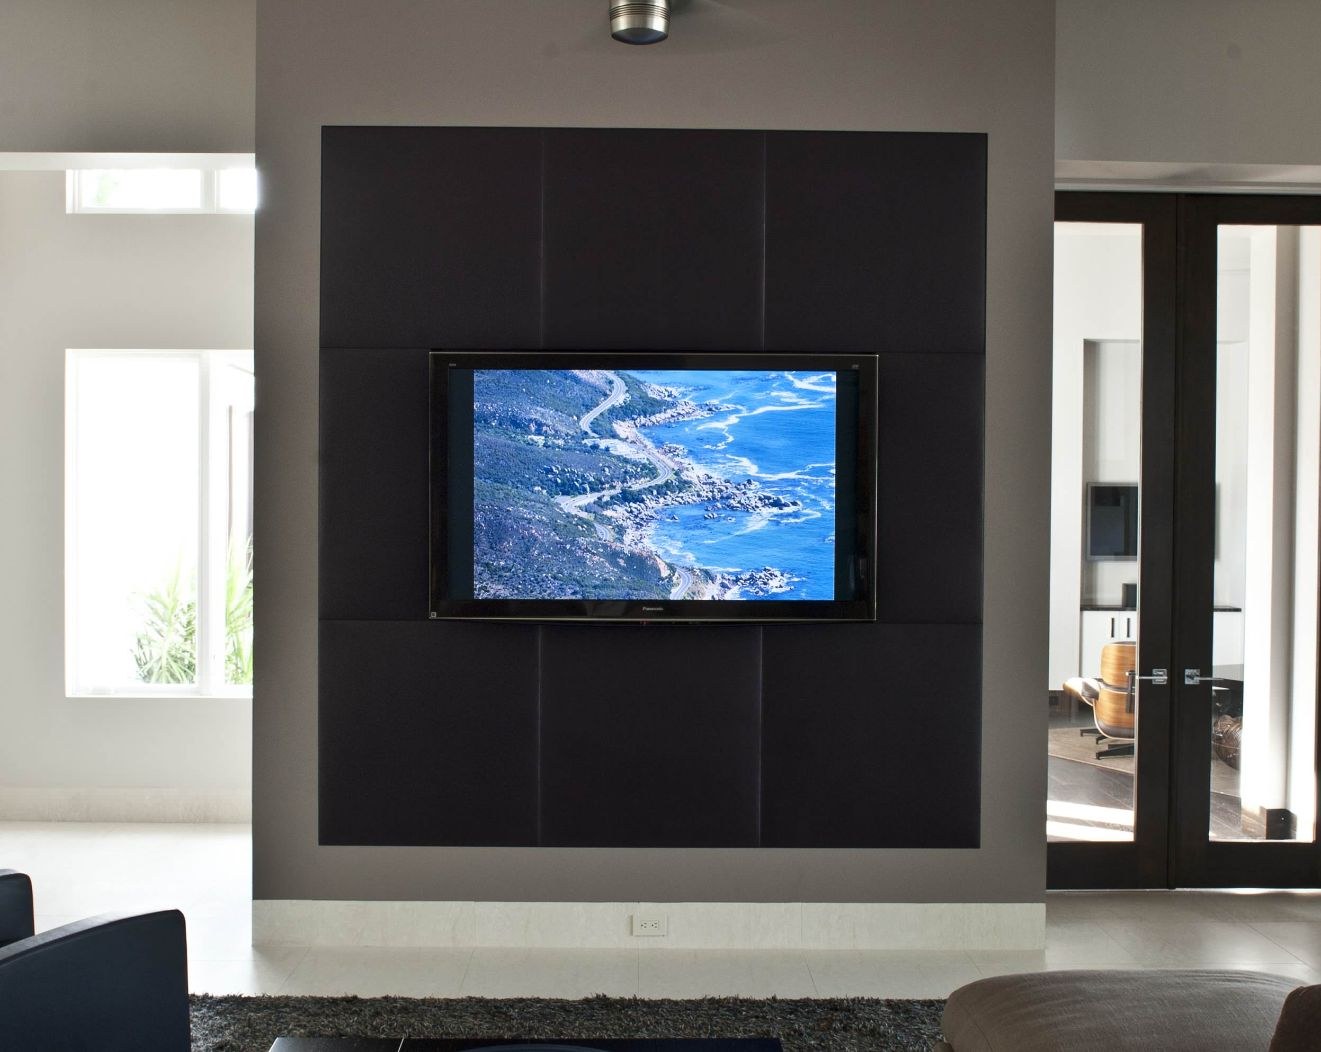 Встроенные каналы в телевизоре. Телевизор встроенный в стену. Телевизор встроен в стену. Встраиваемый телевизор. Панель для телевизора.